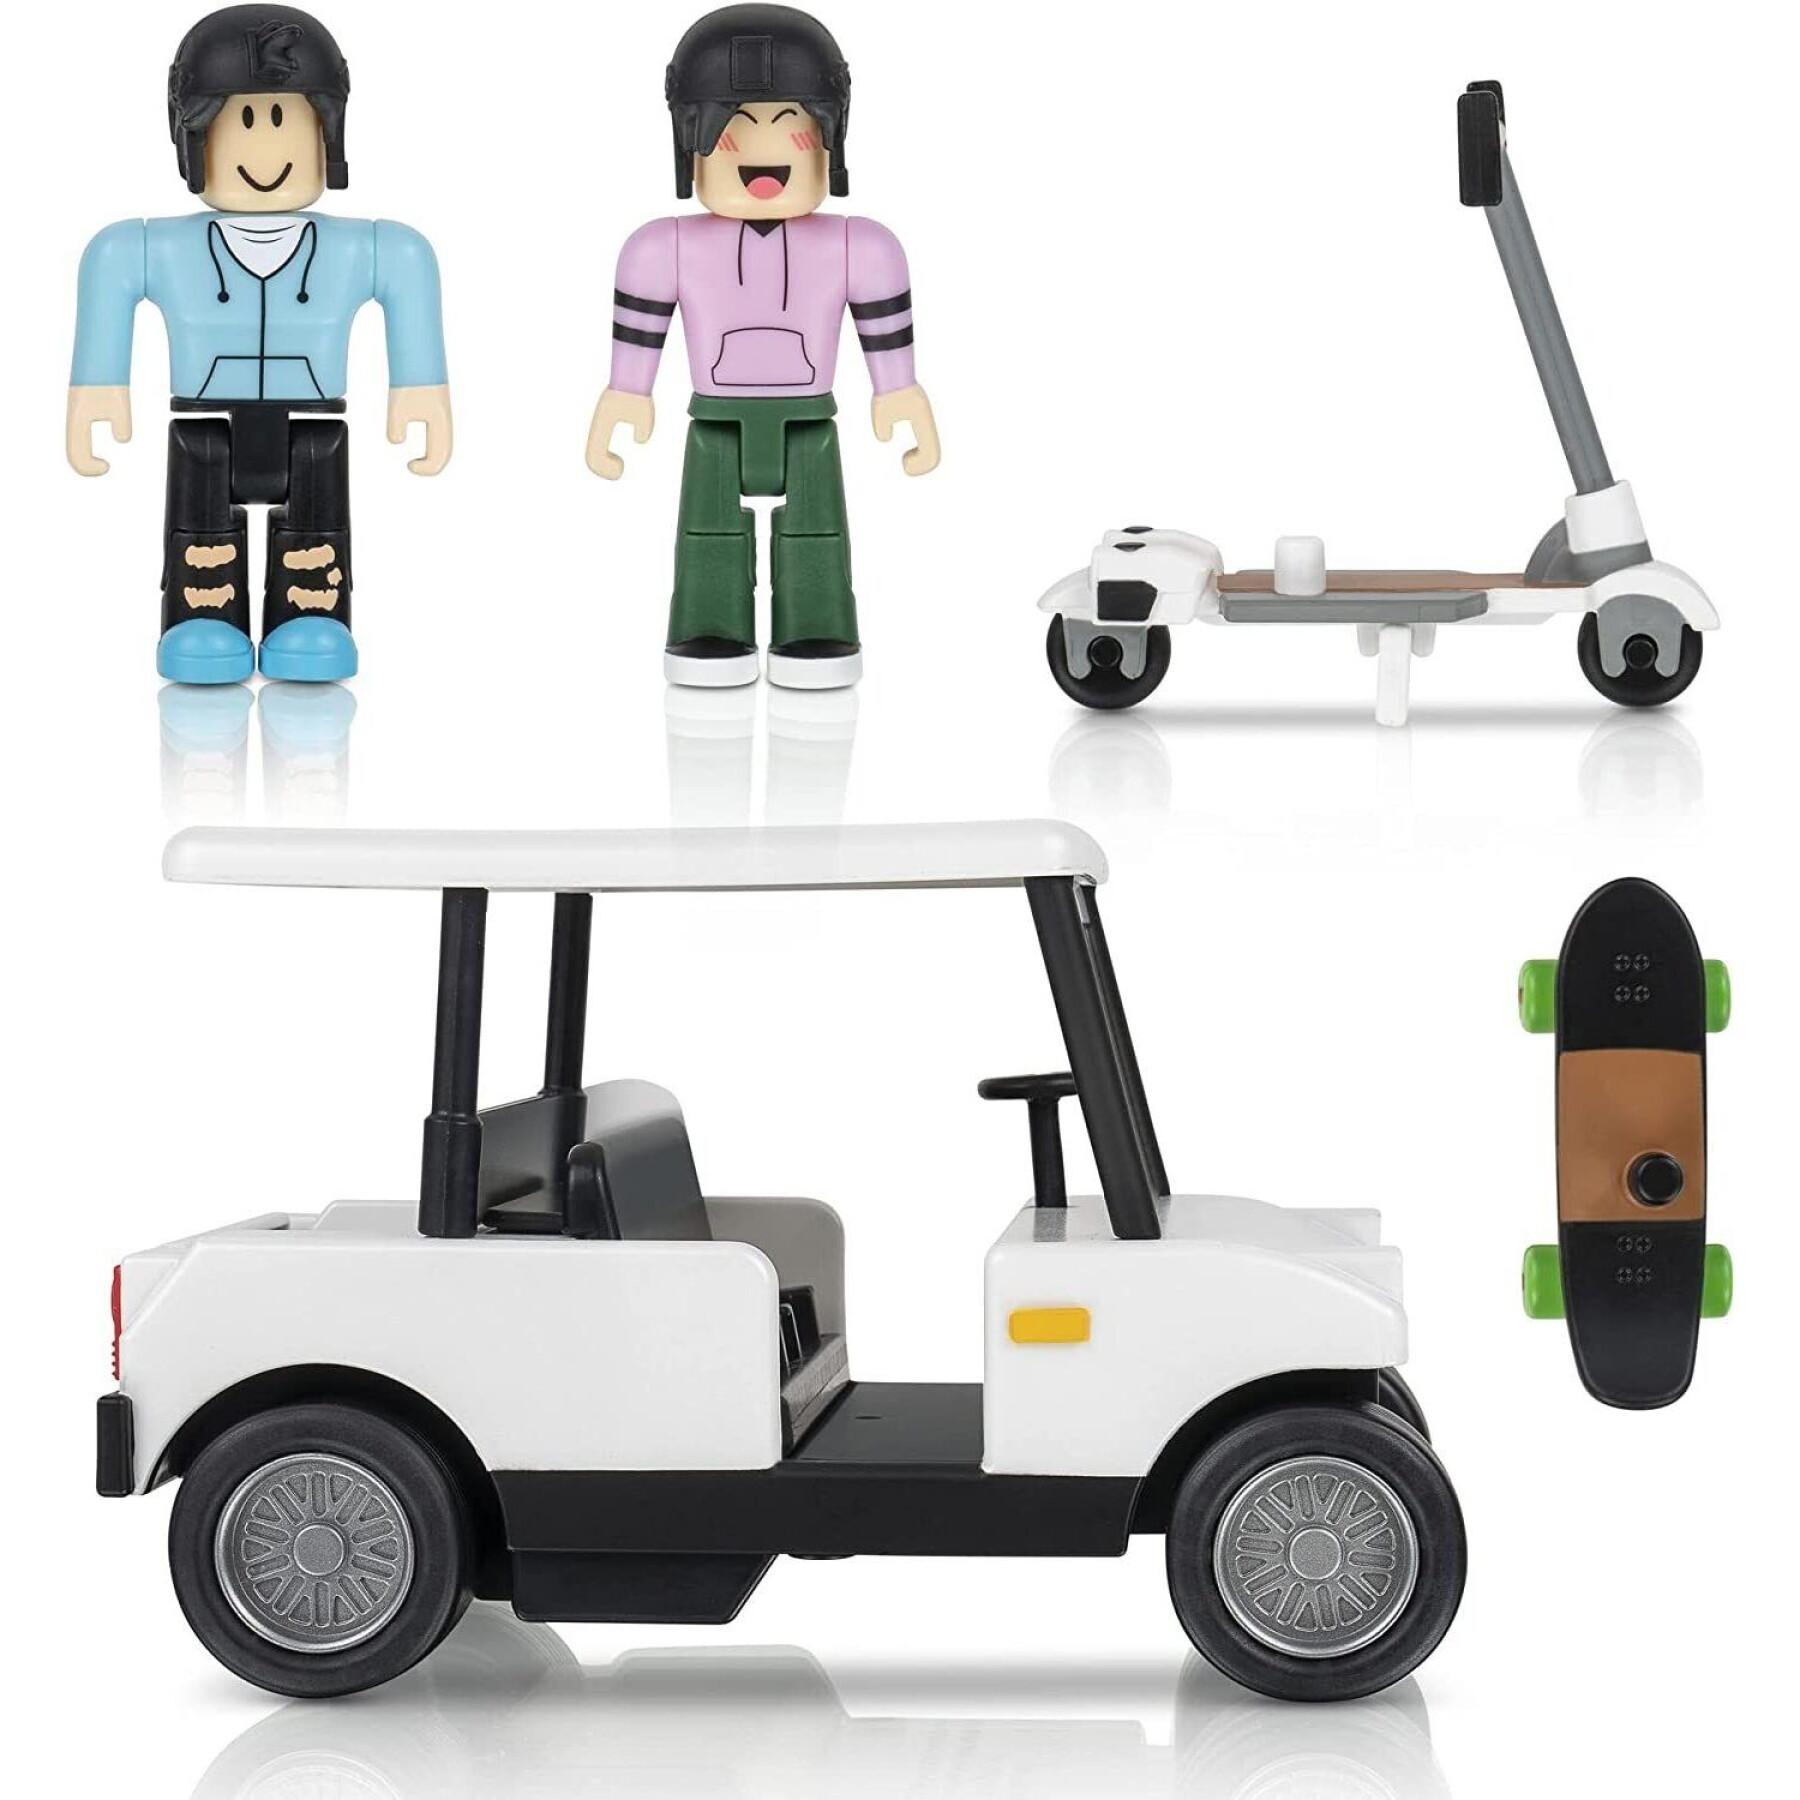 Golf car building set with 2 roblox figures Jazwares